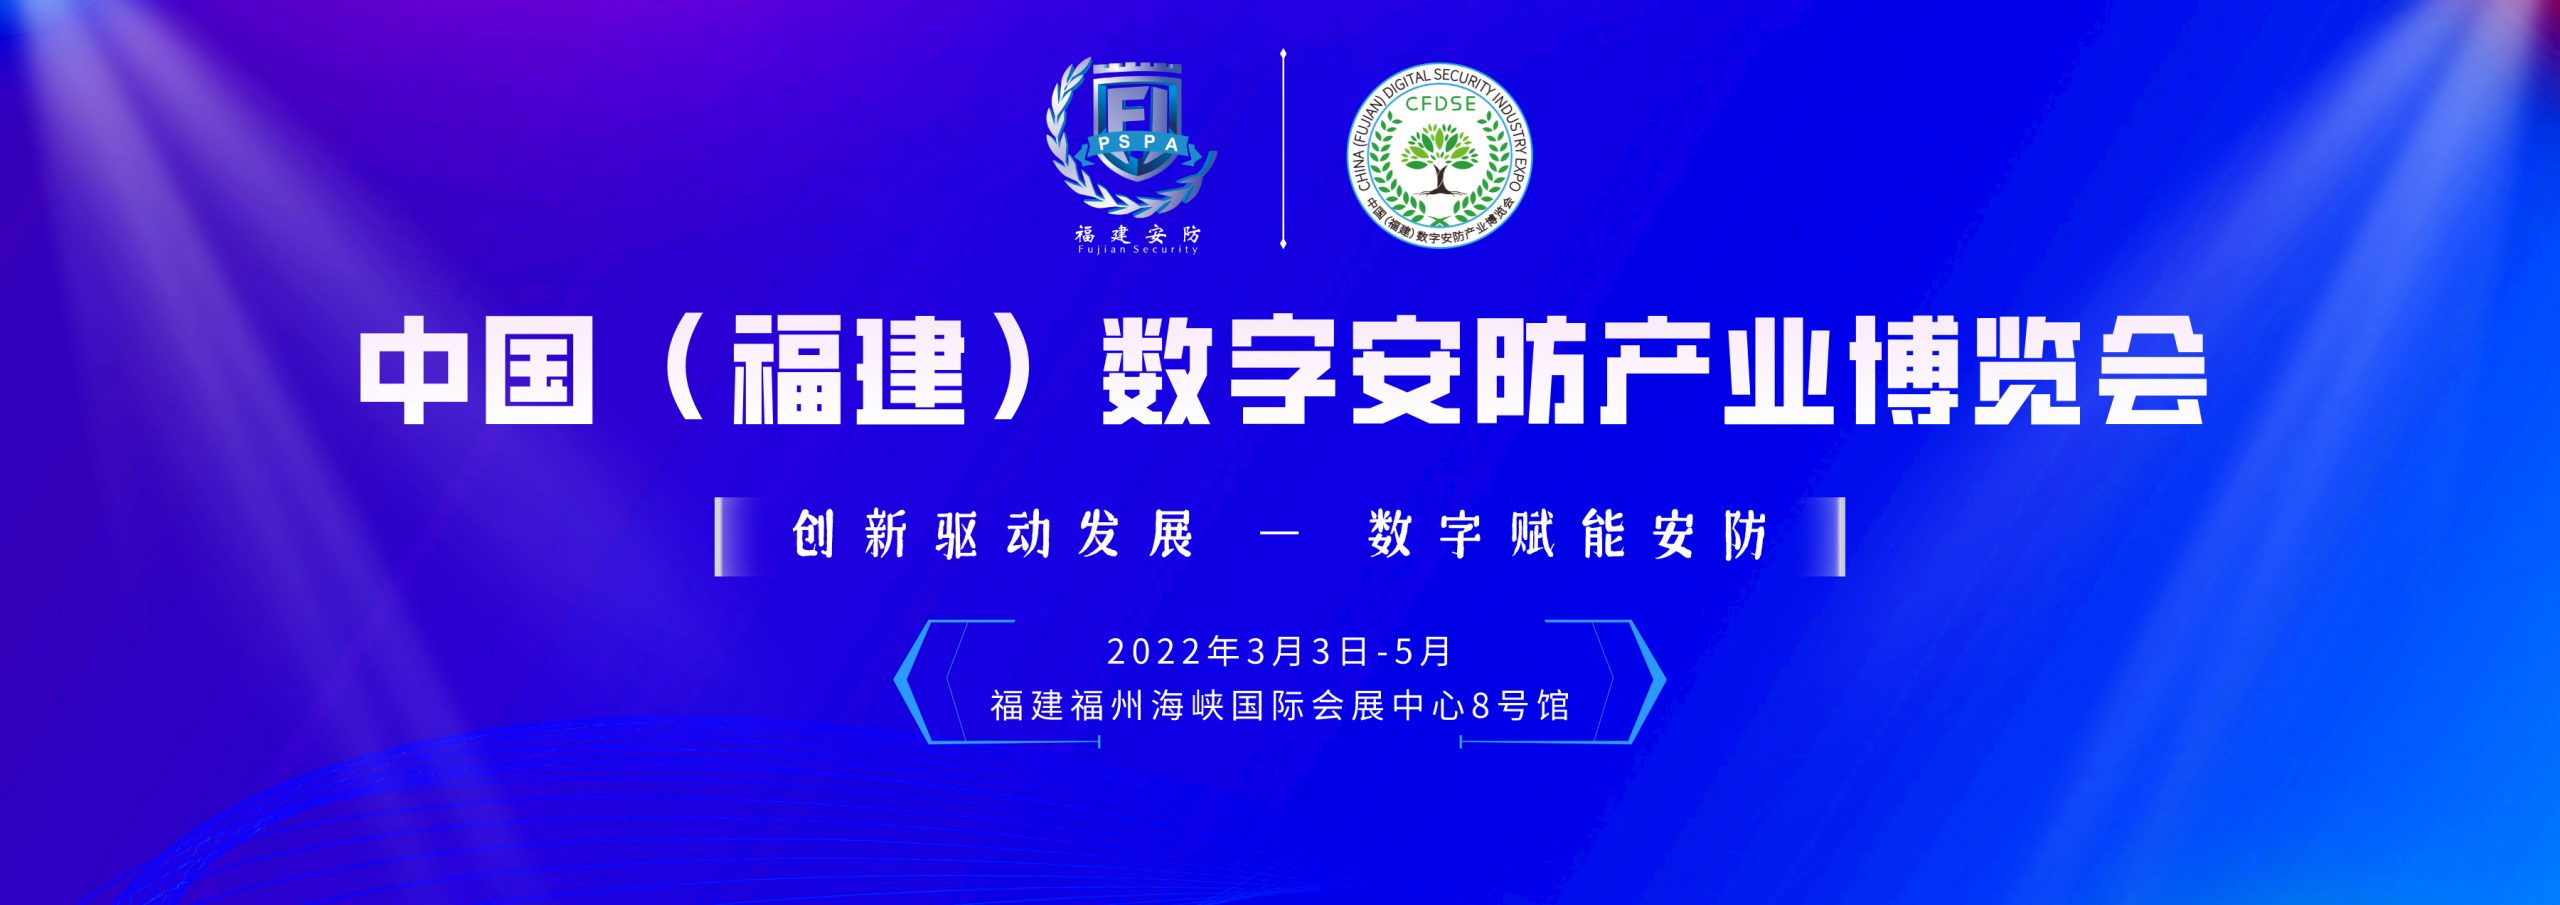 预告：2022中国福建数字安防产业博览会将于3月3日在福州海峡国际会展中心举办